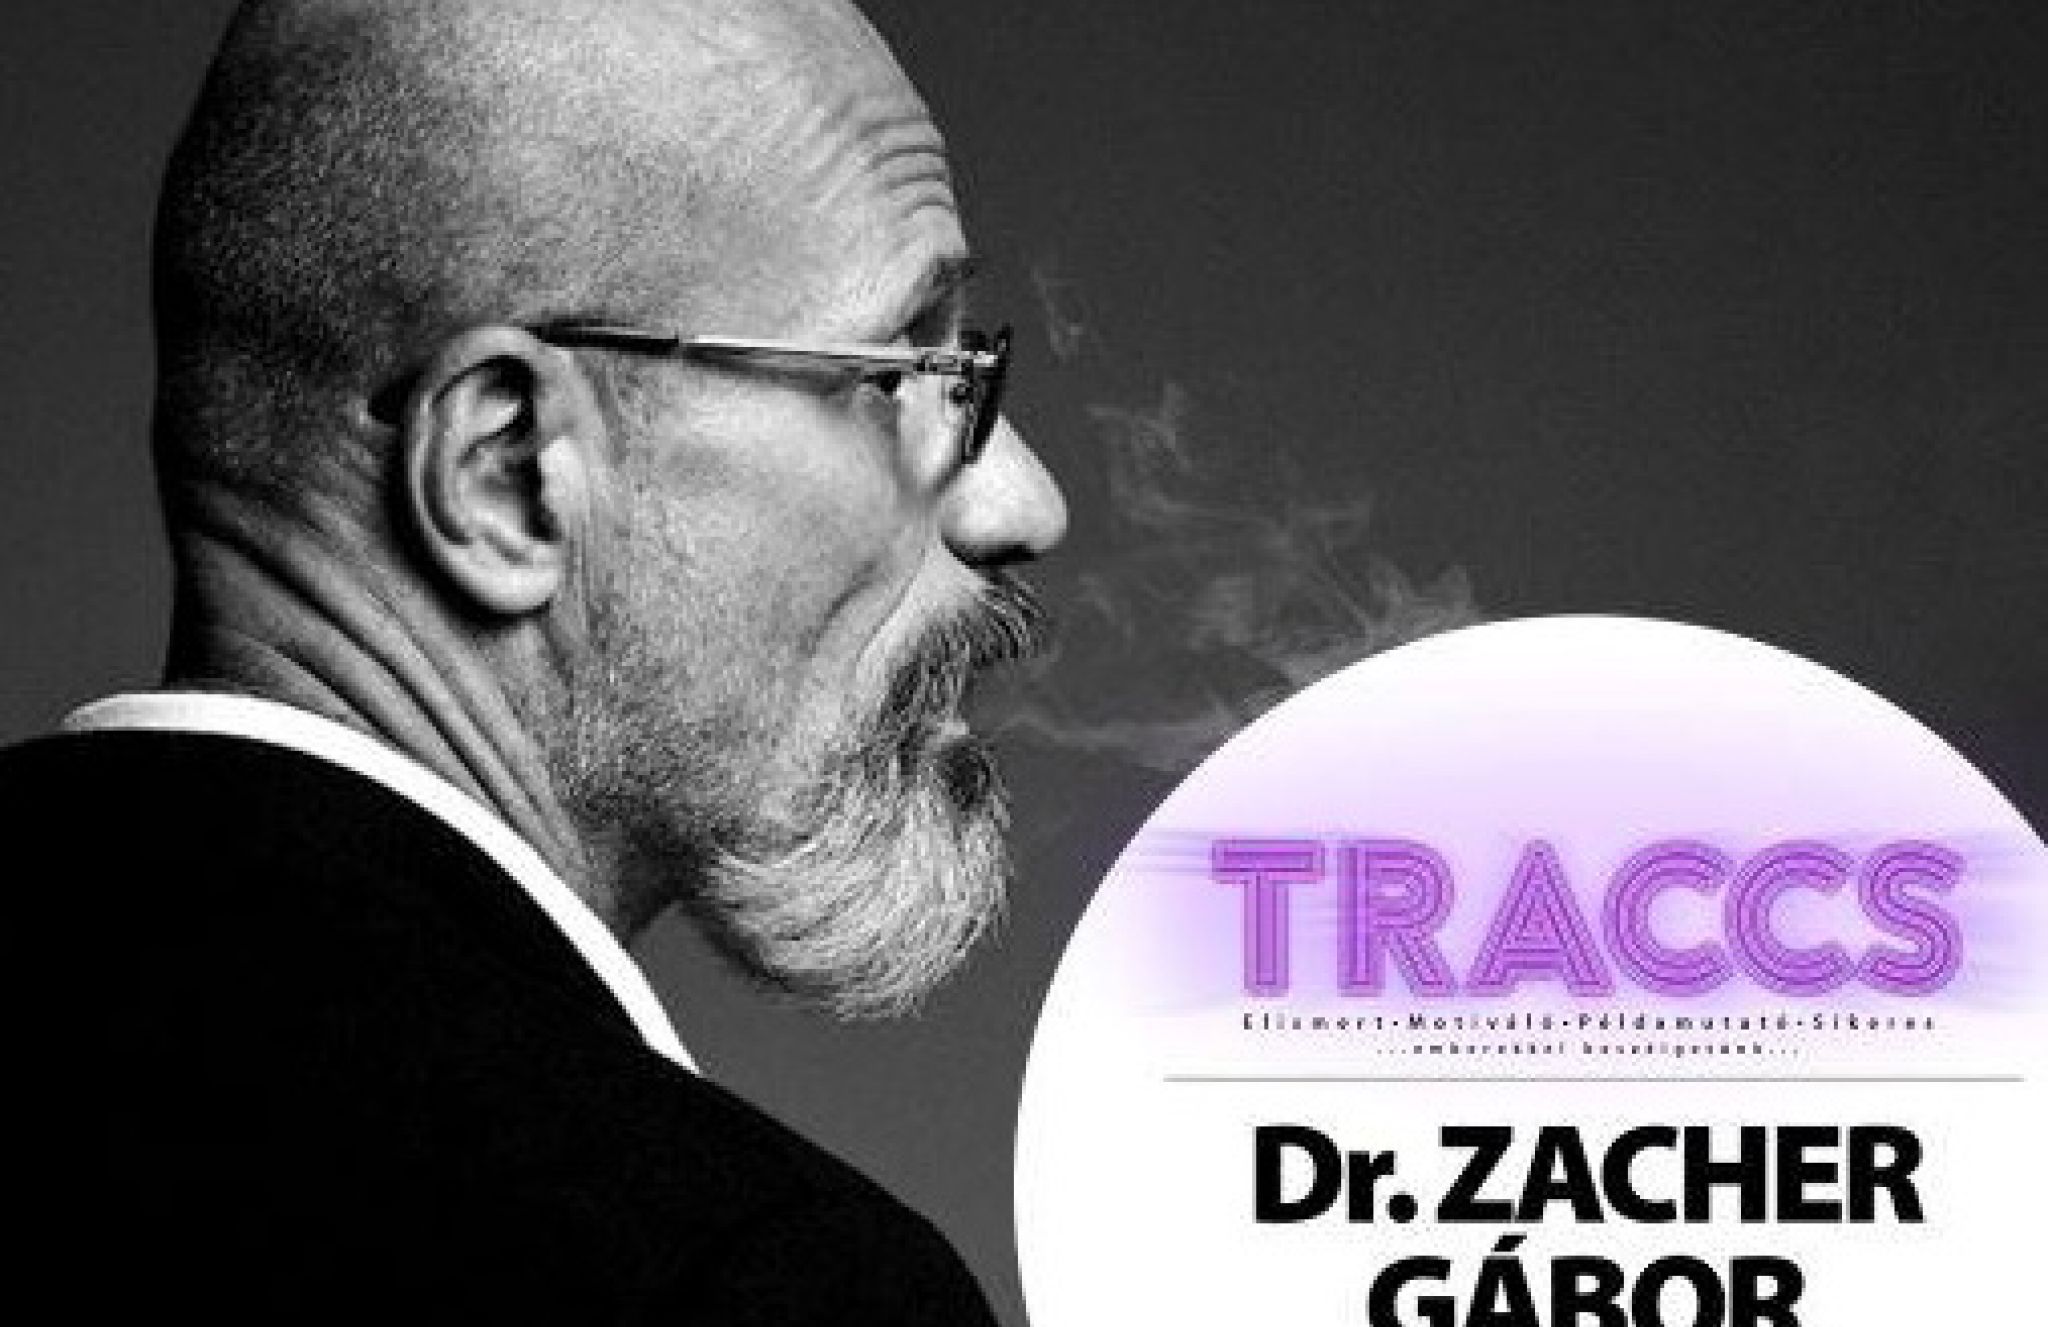 Traccs! - Beszélgetés dr. Zacher Gáborral